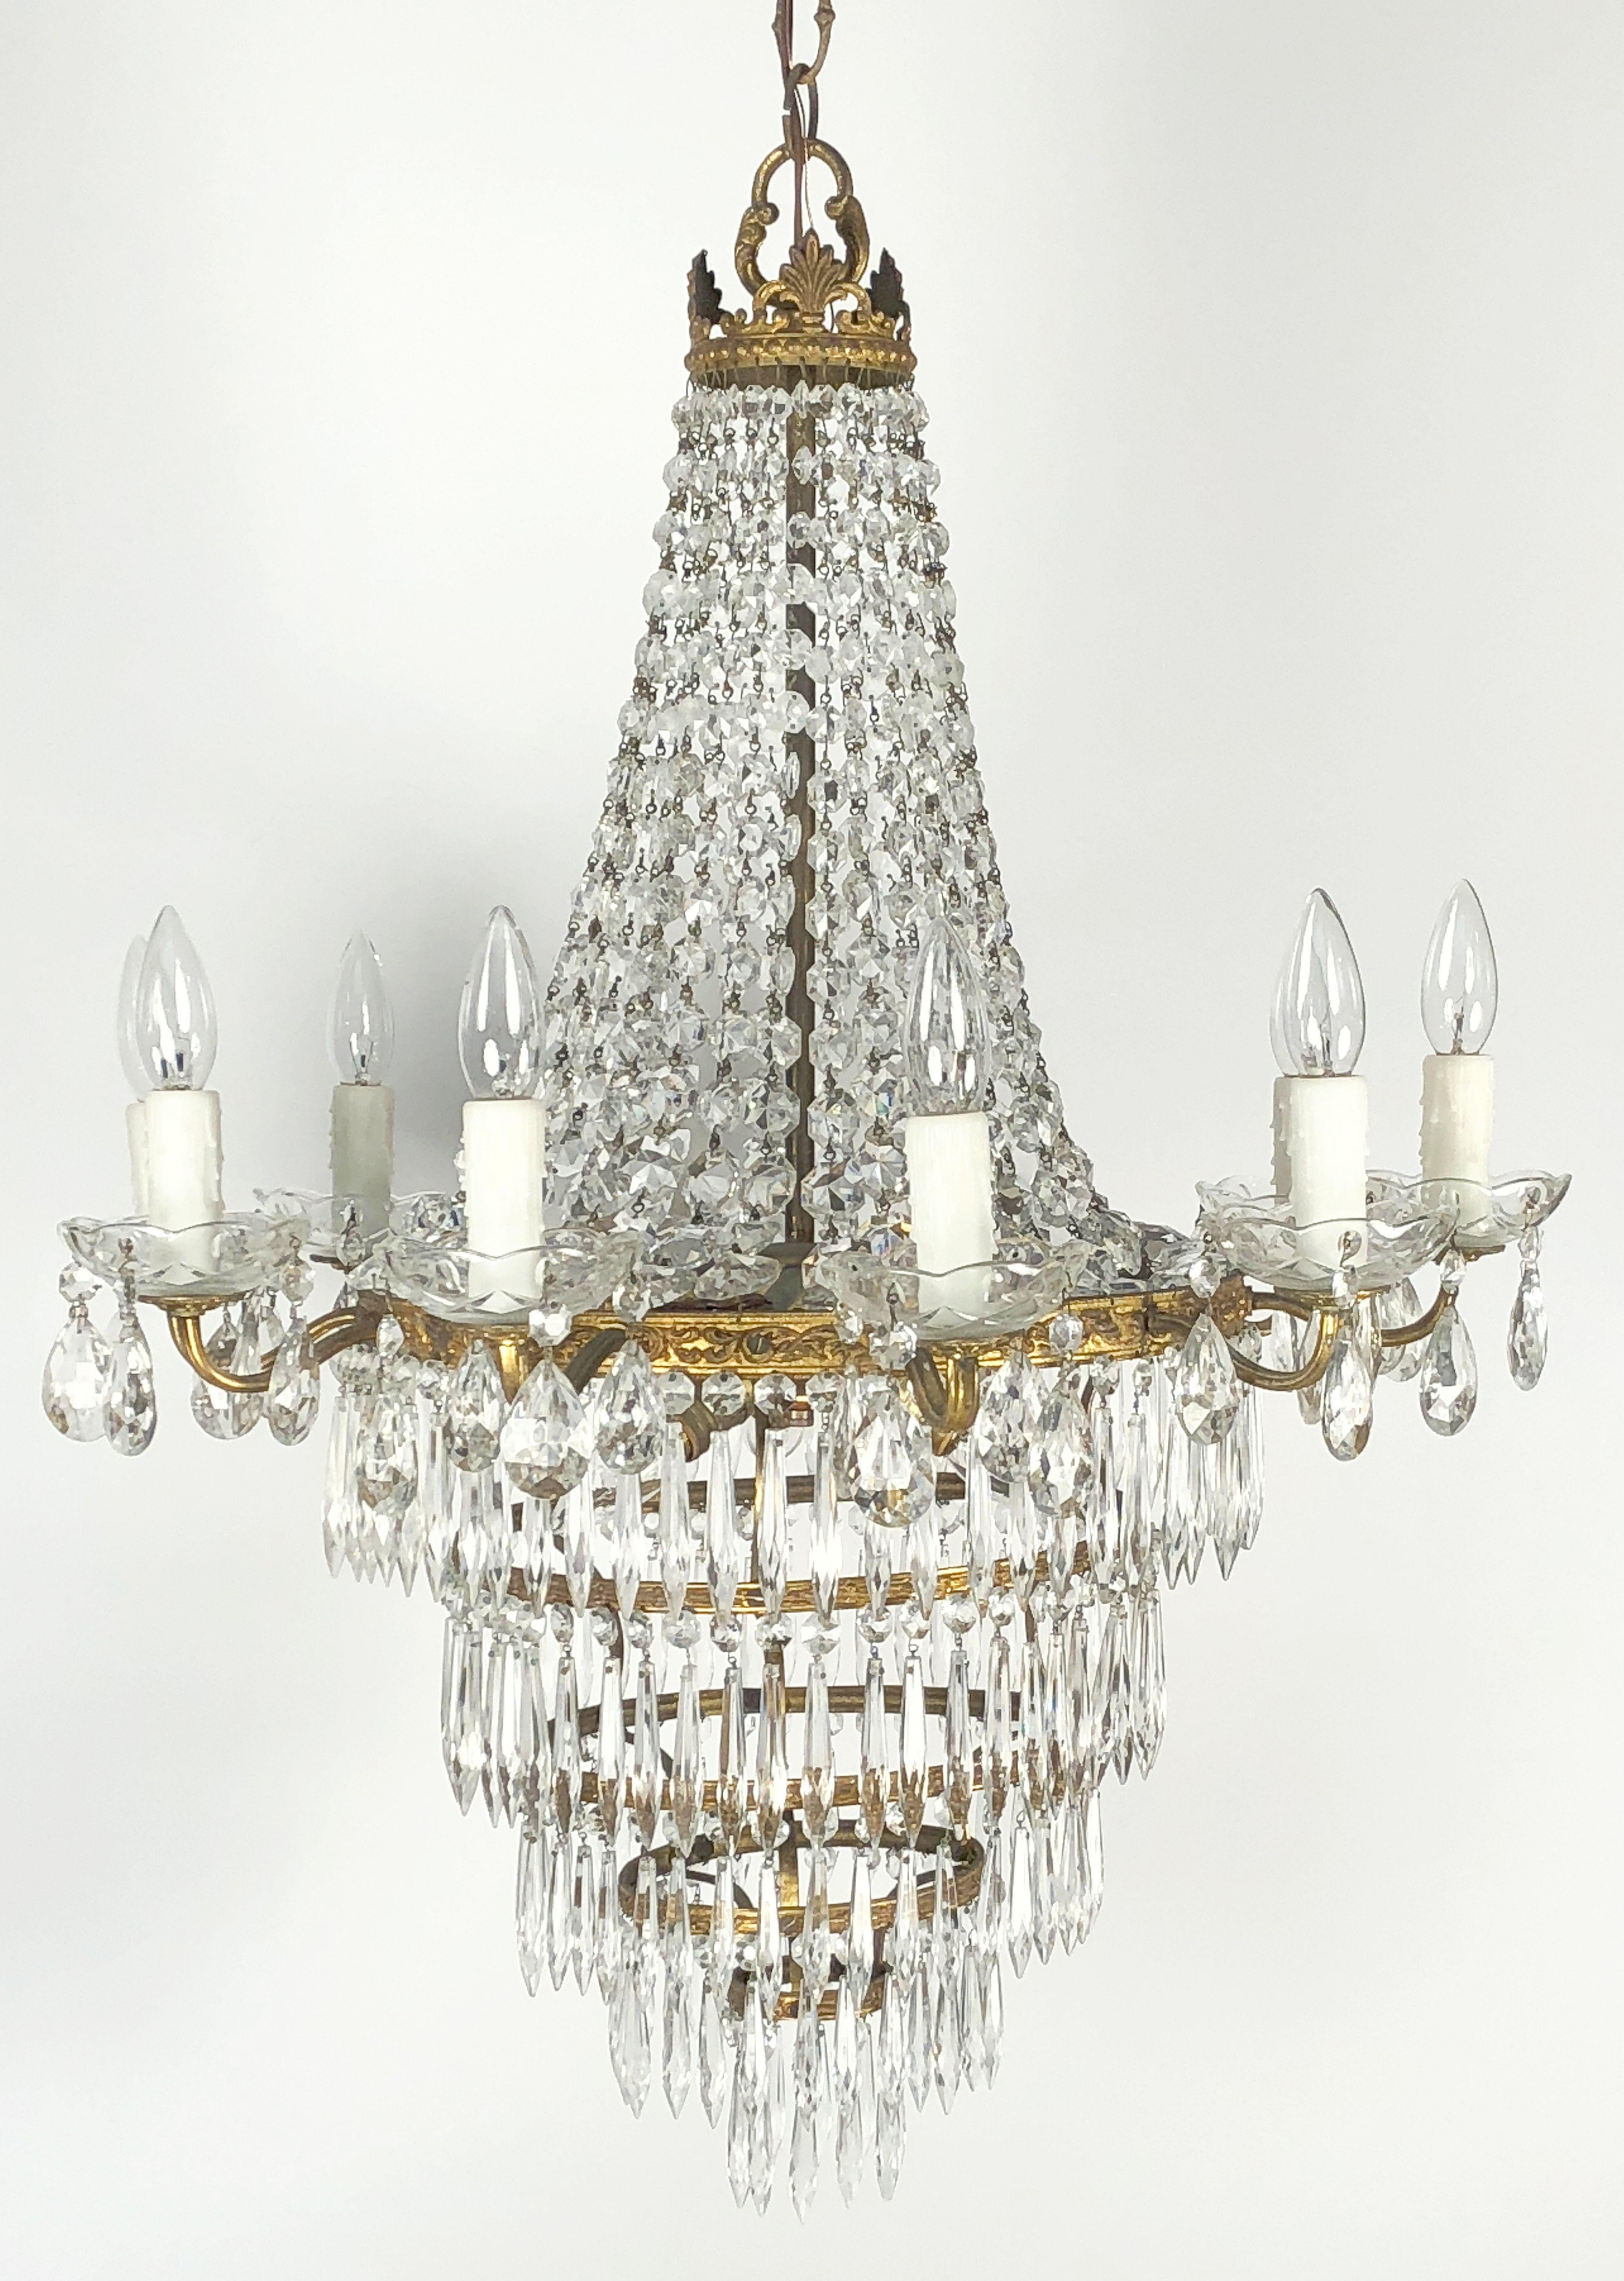 Un magnifique lustre italien à treize lumières en métal doré et cristaux, dans le style Empire, avec une couronne de pendentifs en cascade, avec un anneau de dix lumières autour de la circonférence entourant un centre de trois lumières, et une base